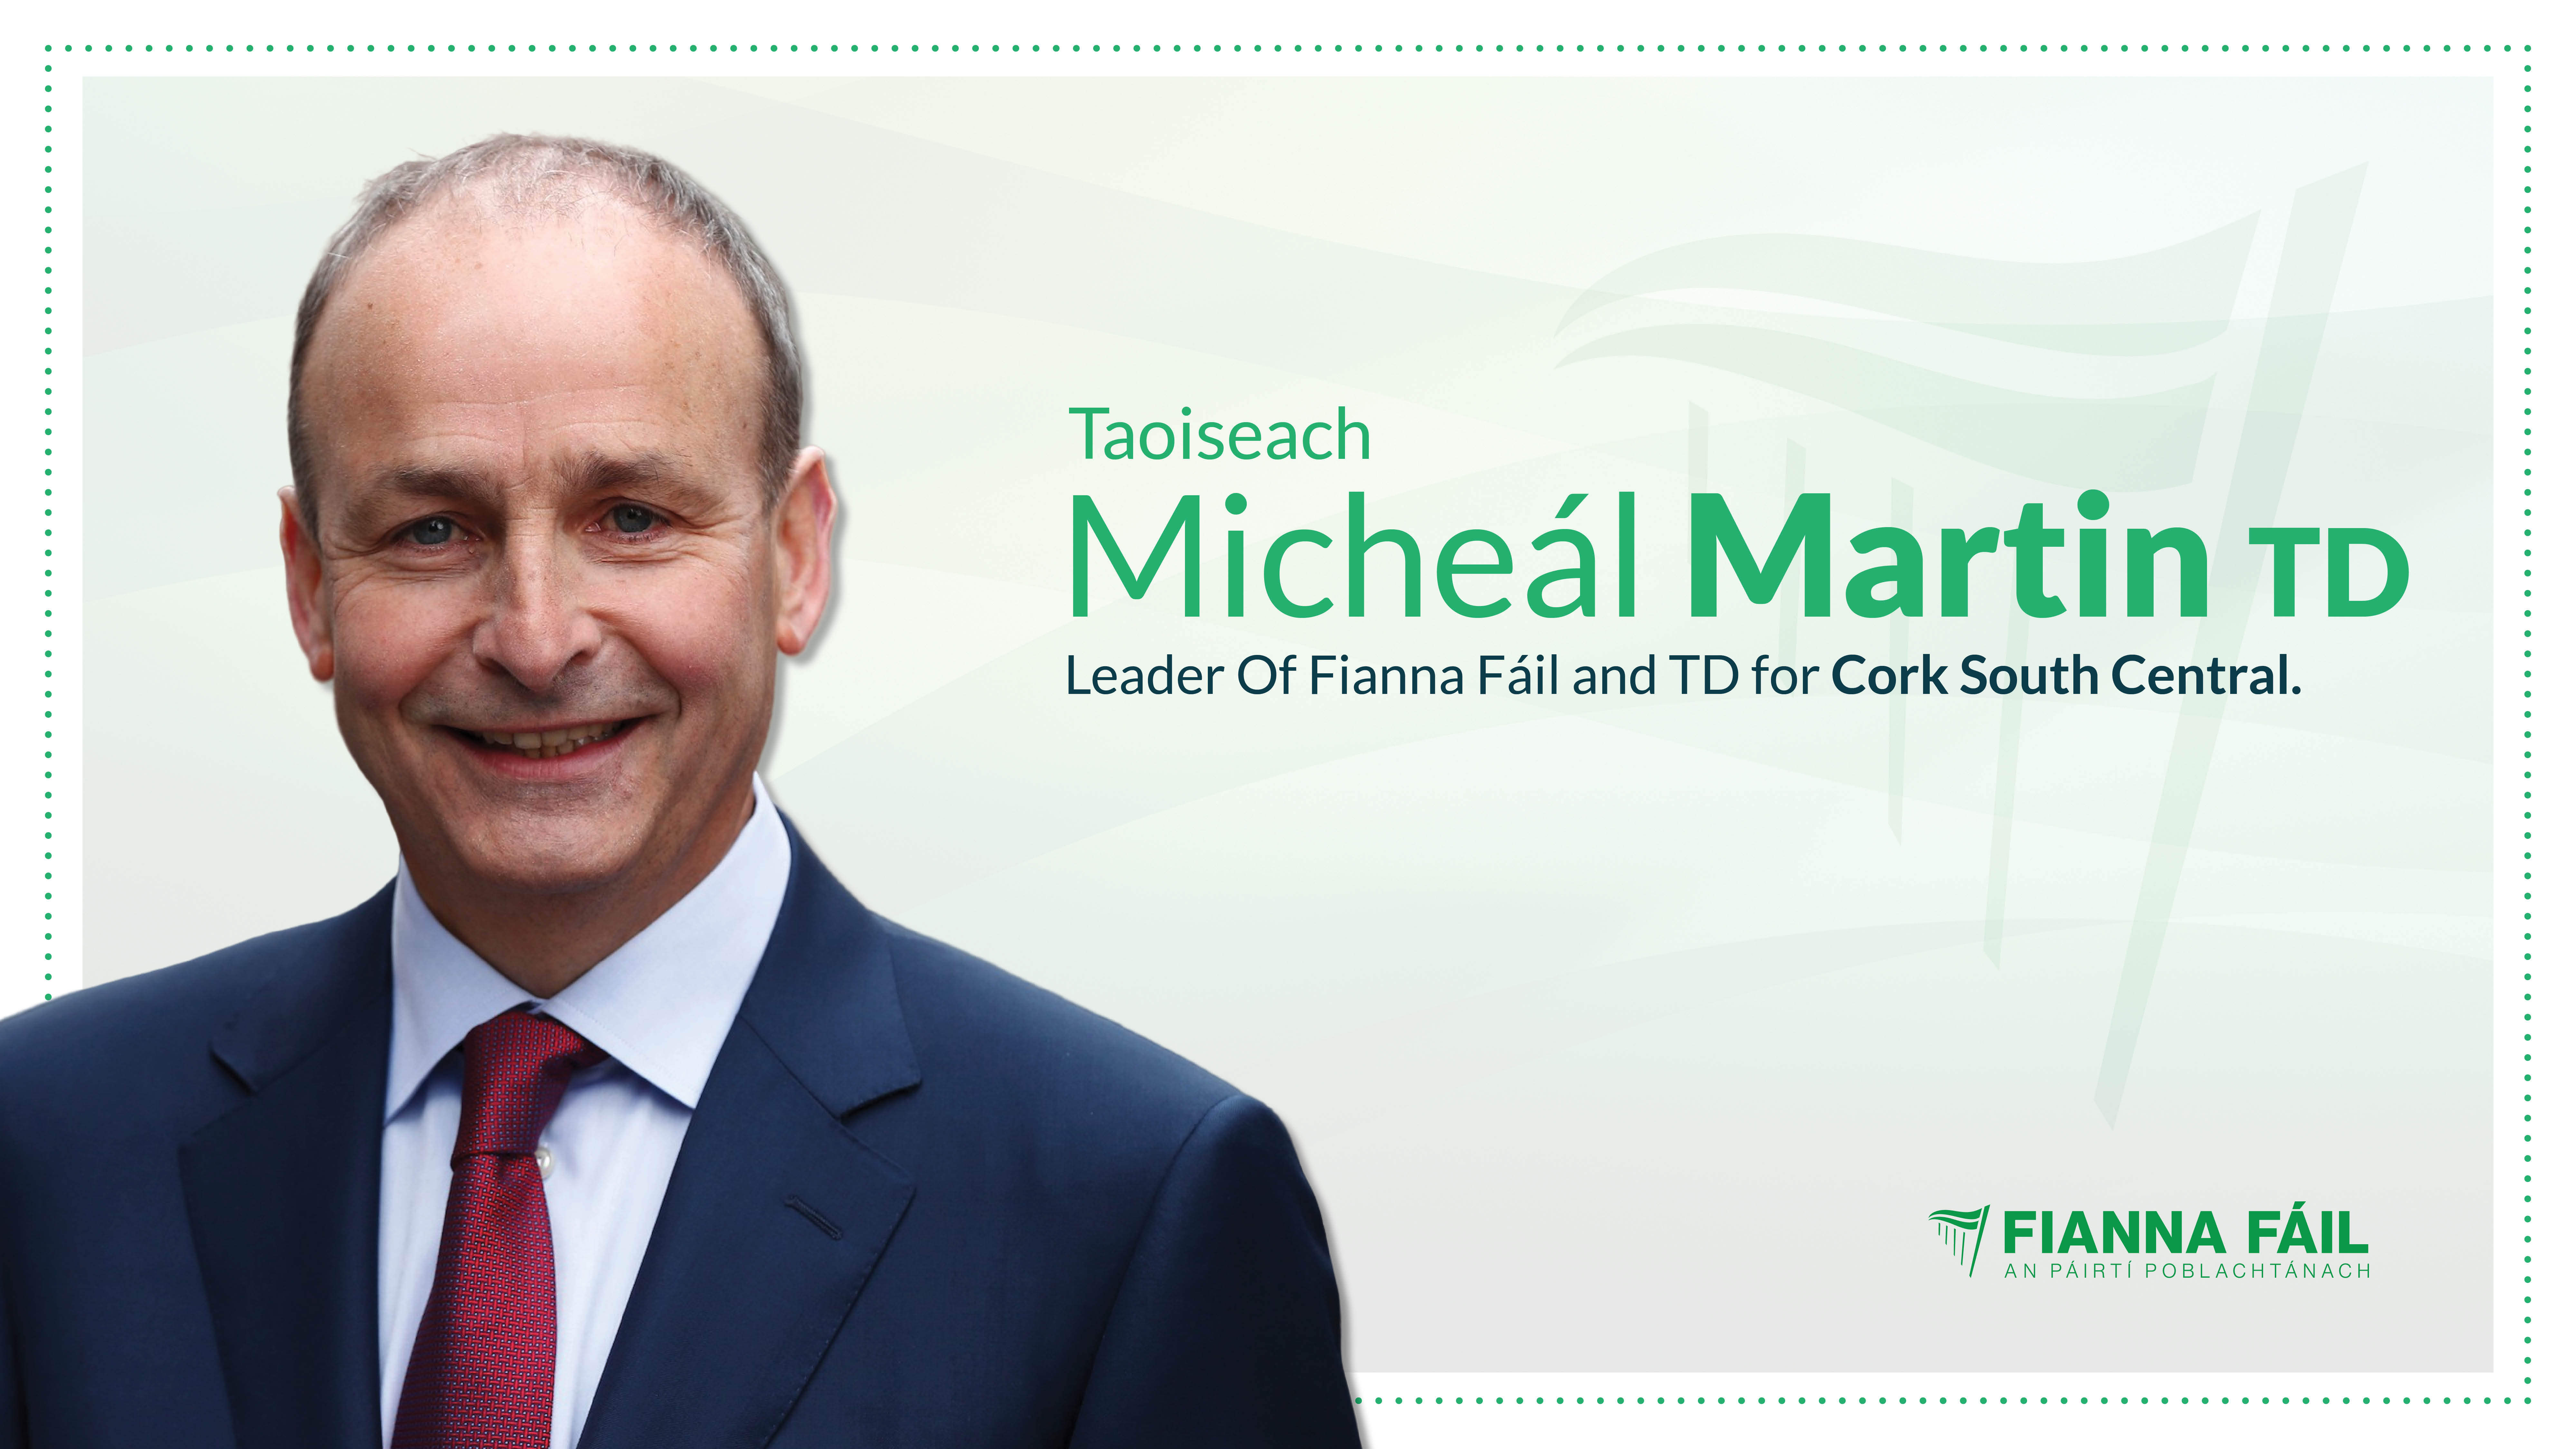 Uachtarán Fhianna Fáil and Taoiseach Micheál Martin TD conveys his deep sadness at the passing of Chris Wall